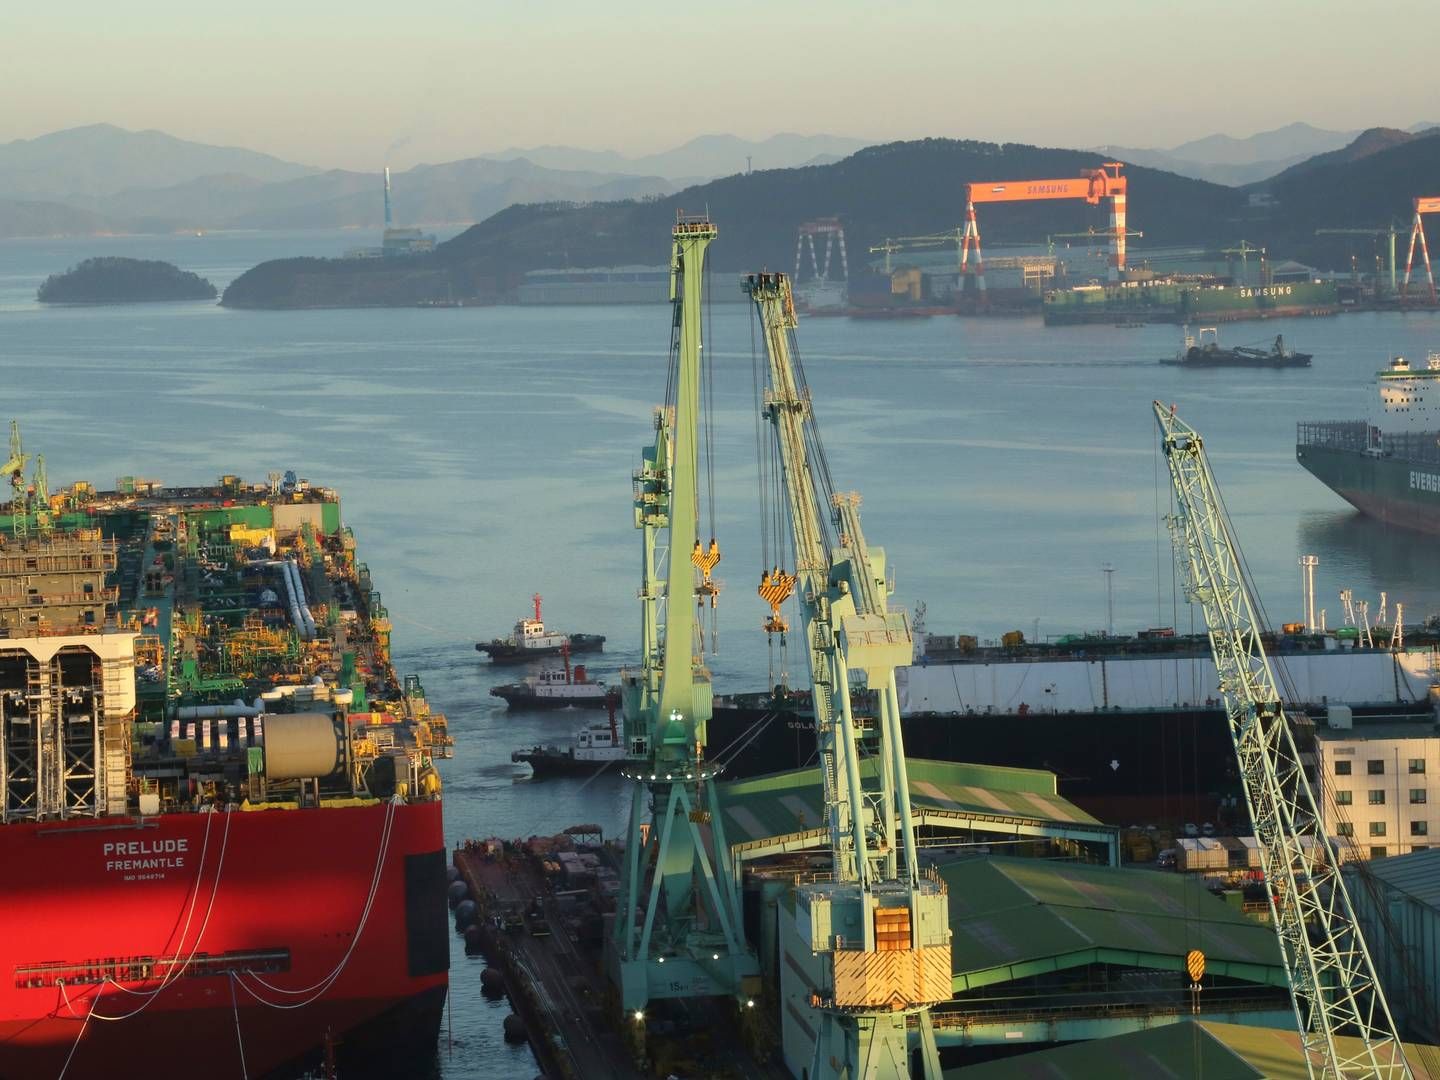 Arkivfoto af skibsværft i Sydkorea. | Foto: Handout/Reuters/Ritzau Scanpix